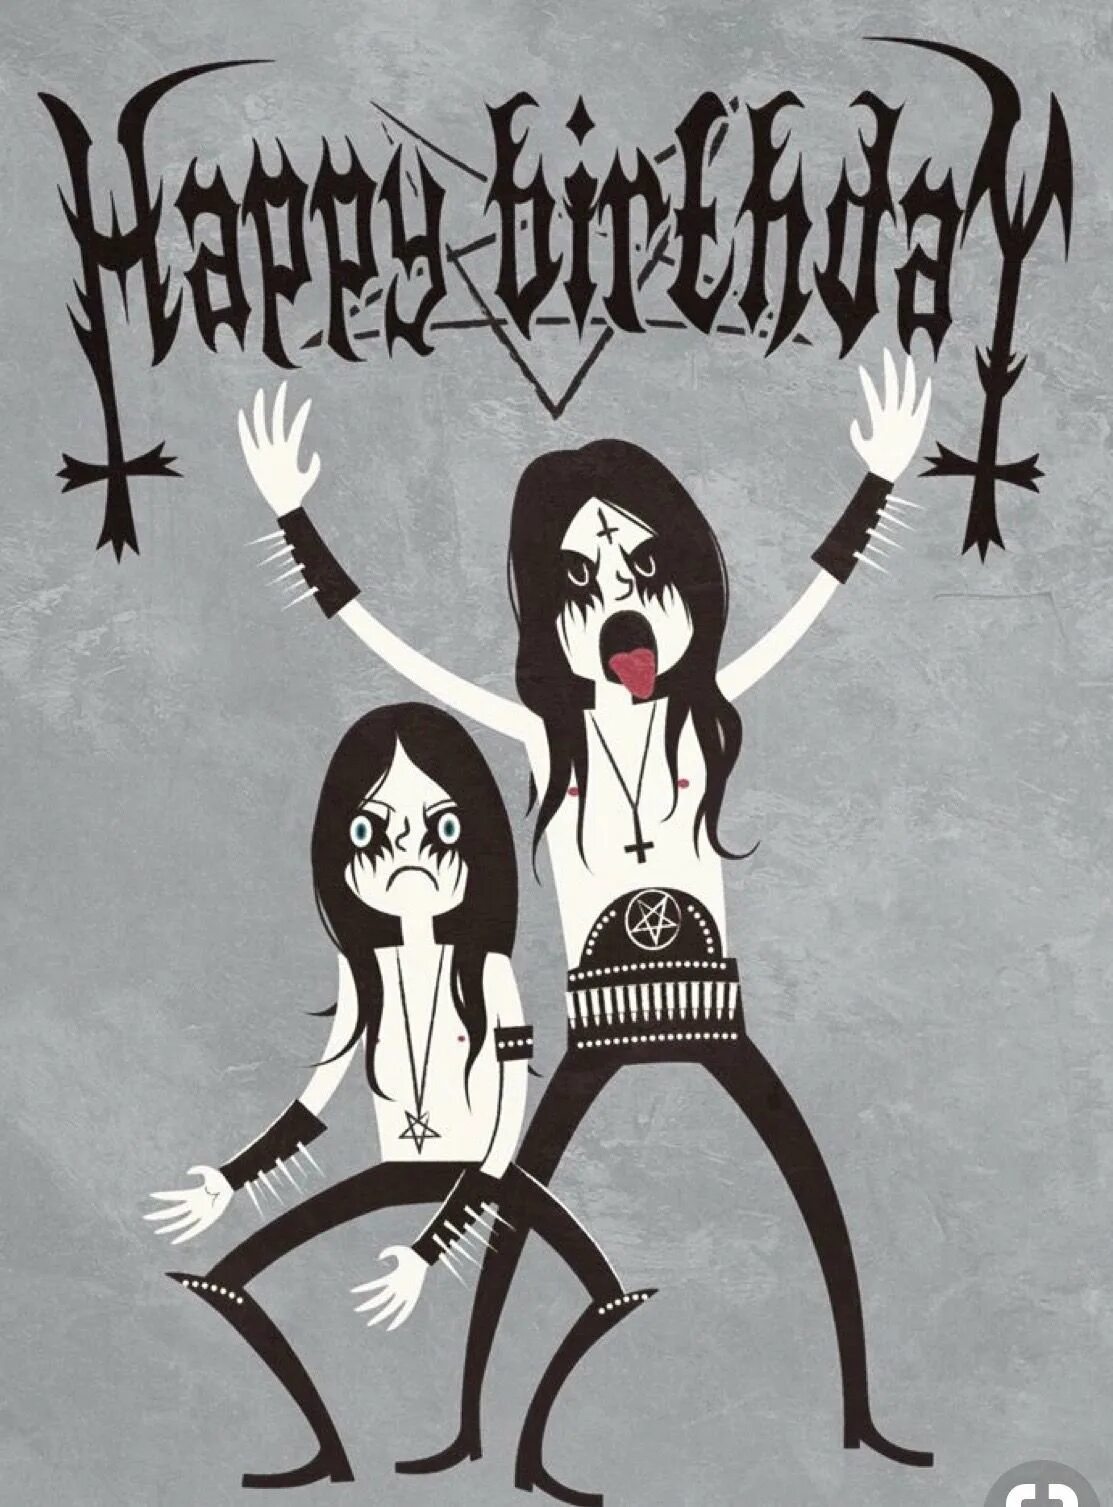 С днём рождения рокеру. Готическое поздравление с днем рождения. С днём рождения Металлисту. Открытка в стиле металл.